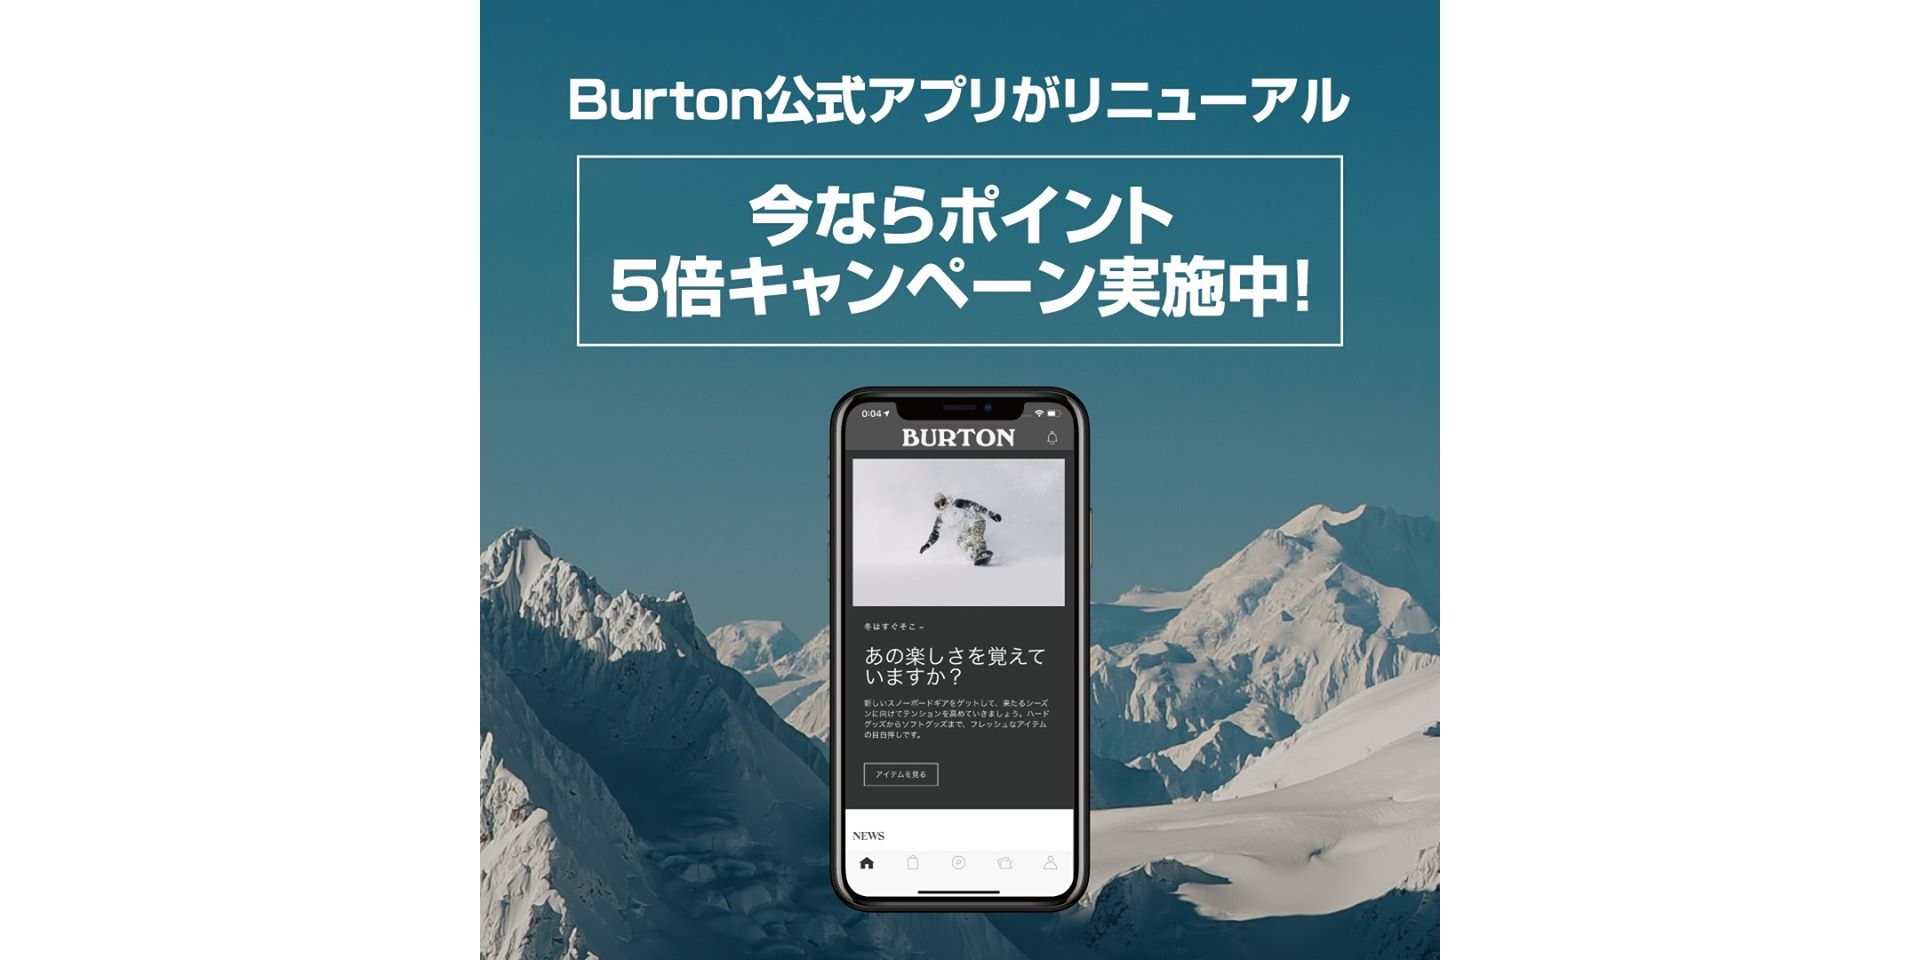 Burton公式アプリが本日よりリニューアル ポイント5倍キャンペーン中 Backside バックサイド スノーボード ウェブマガジン